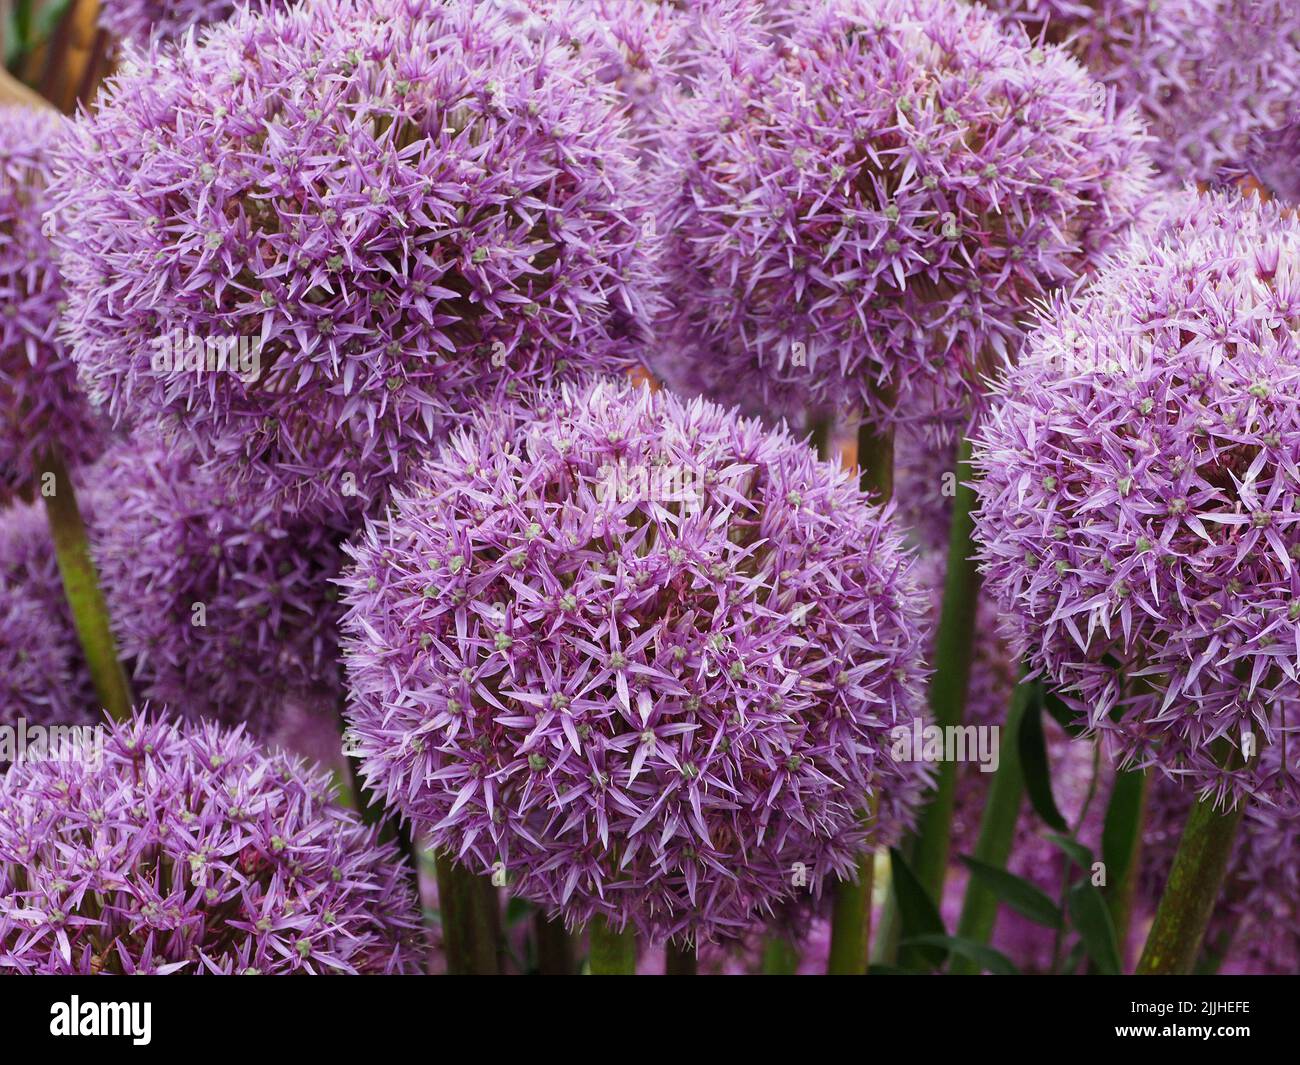 Nahaufnahme mehrerer Blumenköpfe aus purpurfarbenem „Allium Spartacus“, die aus Glühbirnen stammen, die 2022 auf der Tatton Park Flower Show in der englischen Grafschaft Cechhire gezeigt wurden Stockfoto